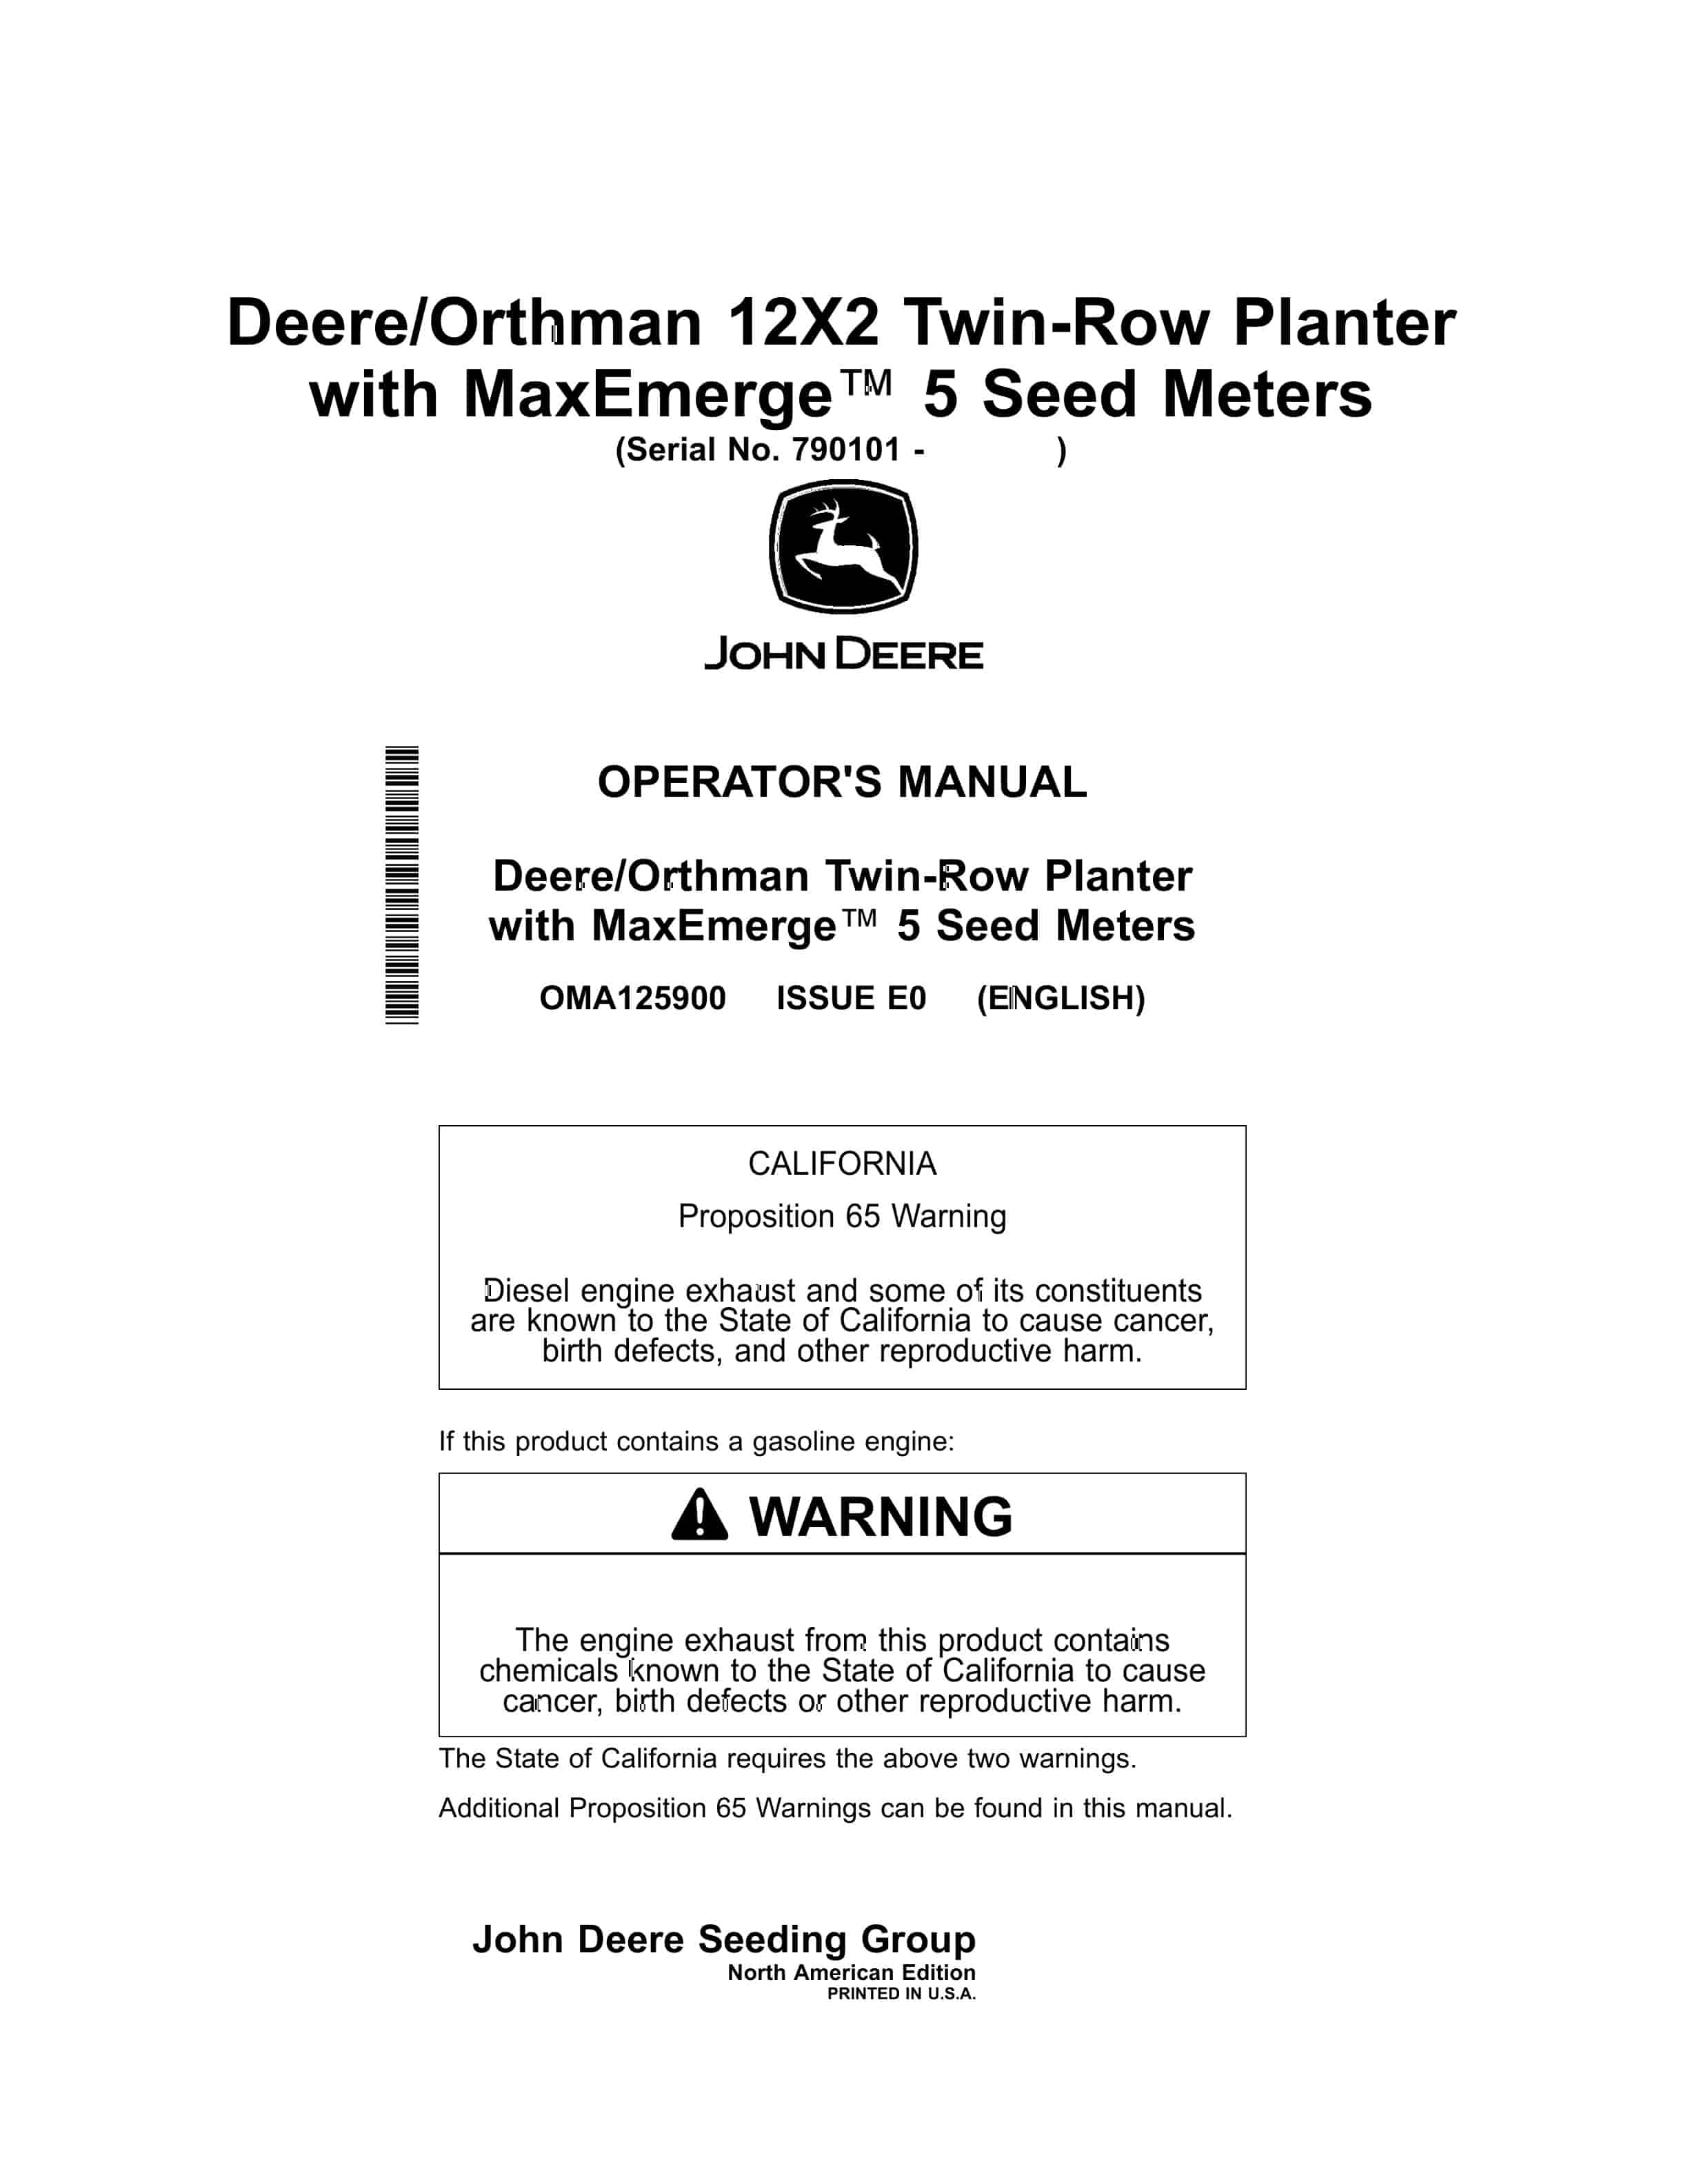 John Deere Orthman 12X2 Twin Row Planter with MaxEmerge 5 Seed Meters Operator Manual OMA125900 1